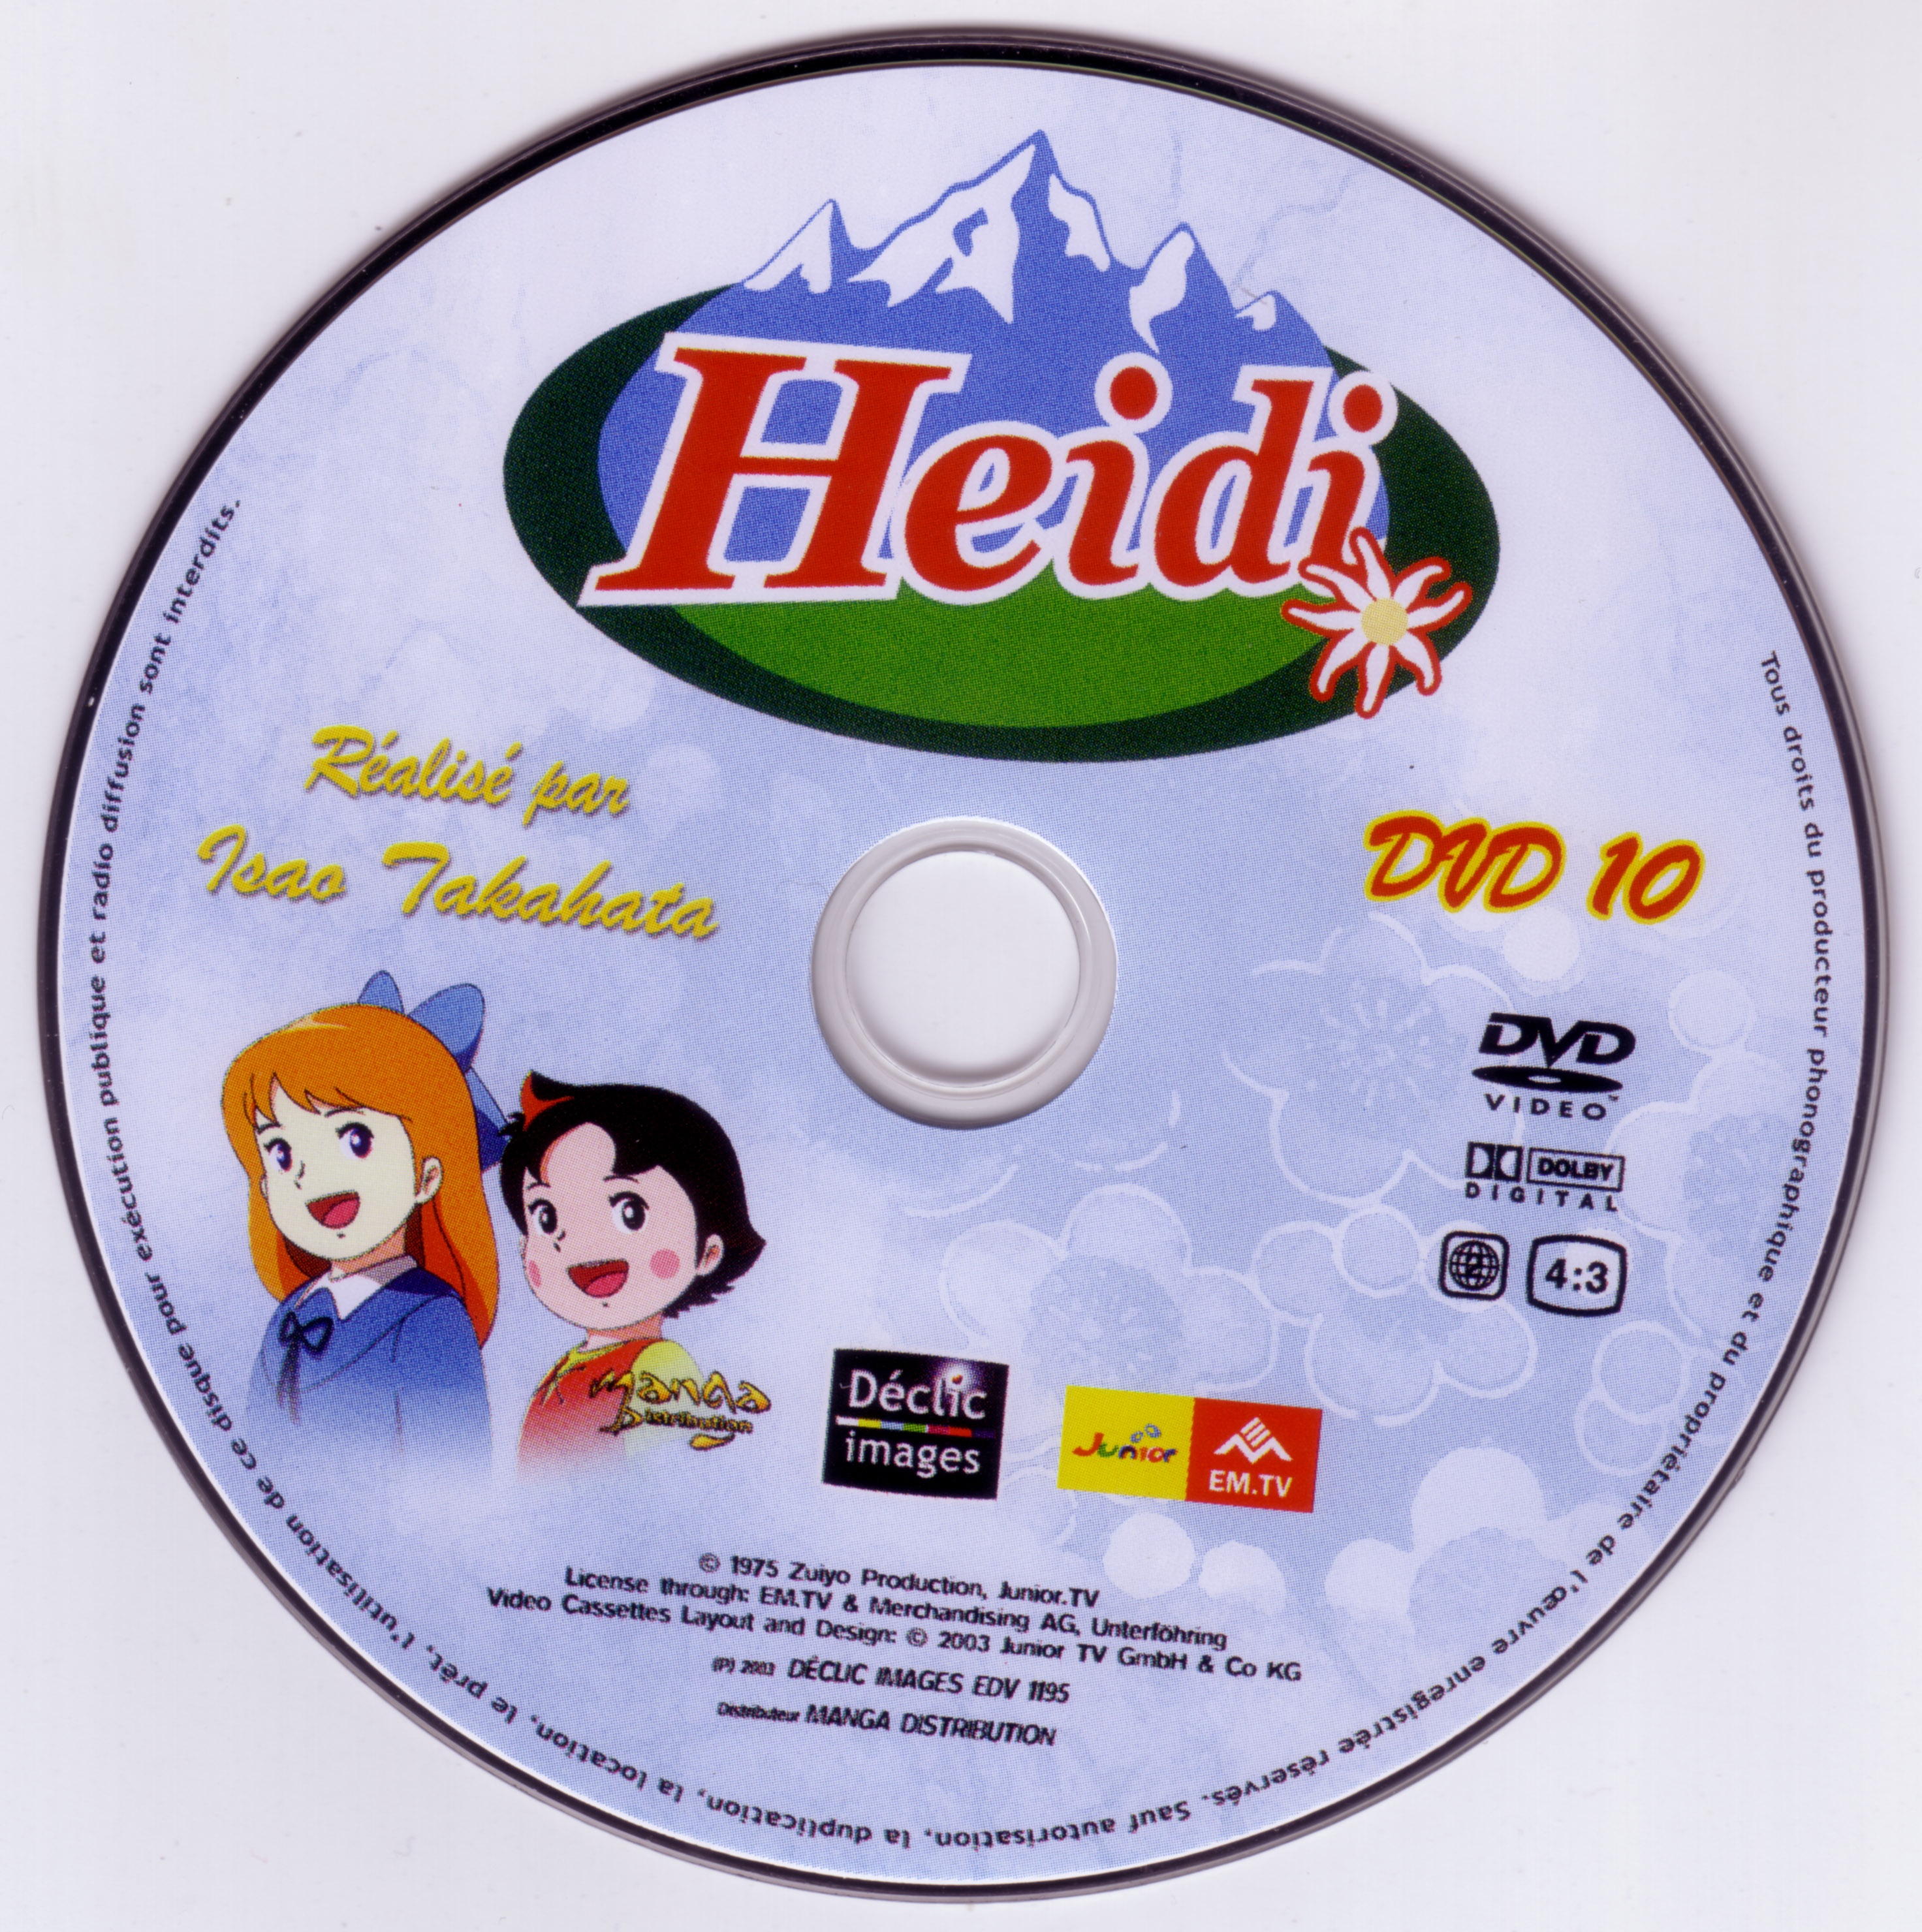 Heidi DVD 10